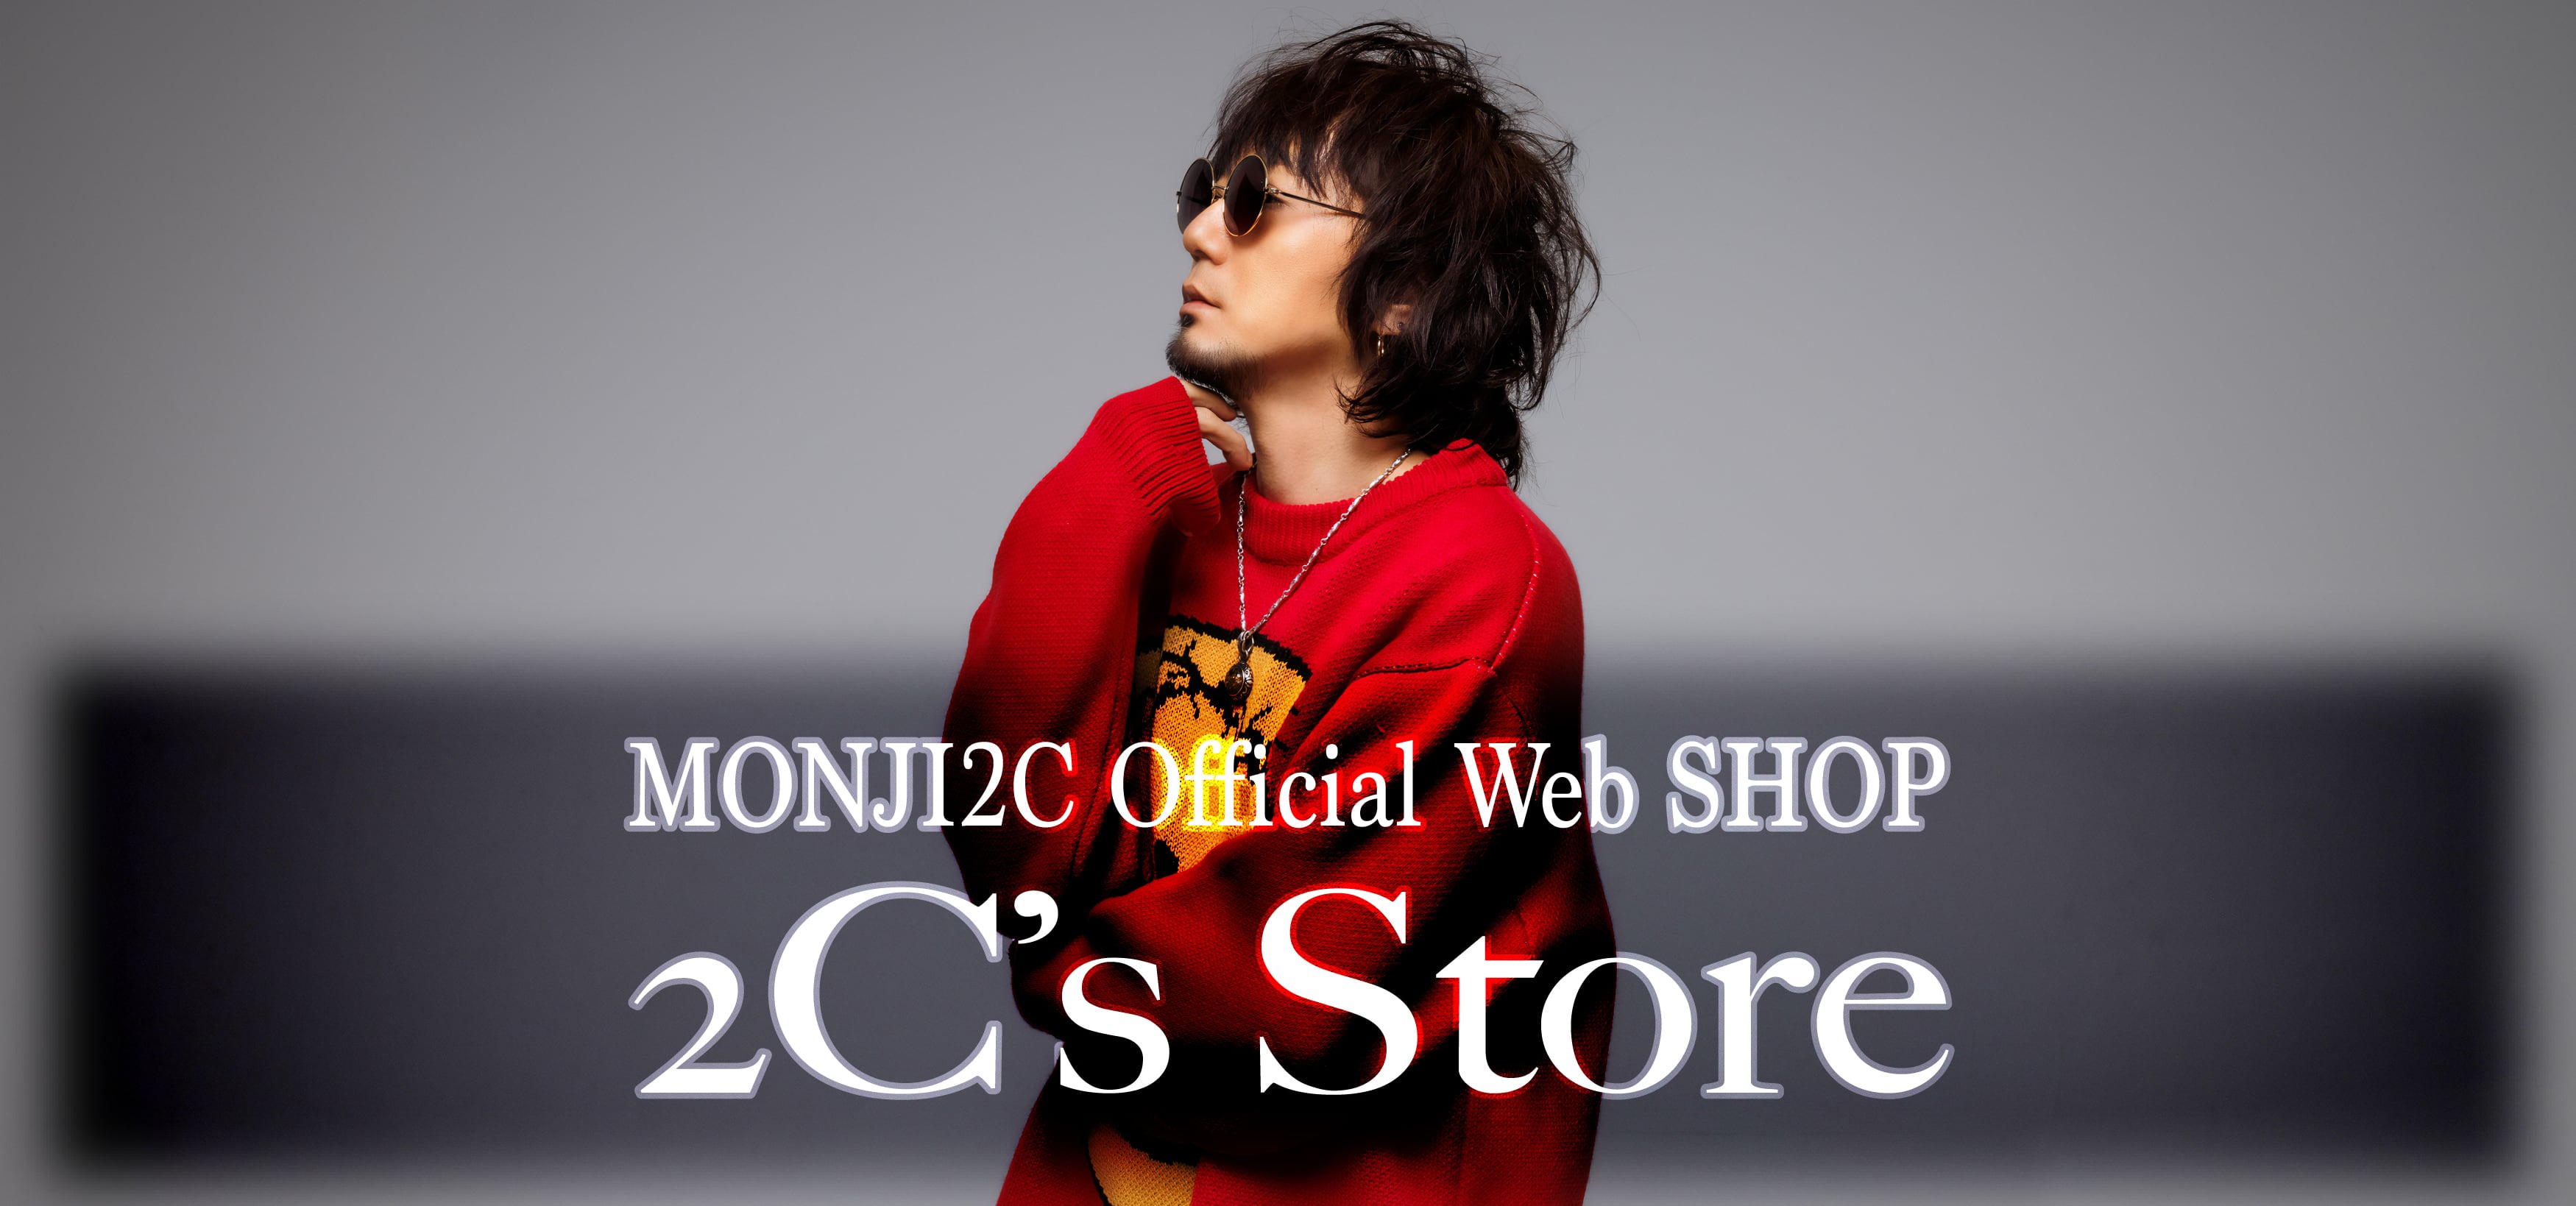 MONJI2C Official Web Shop -2C's Store-